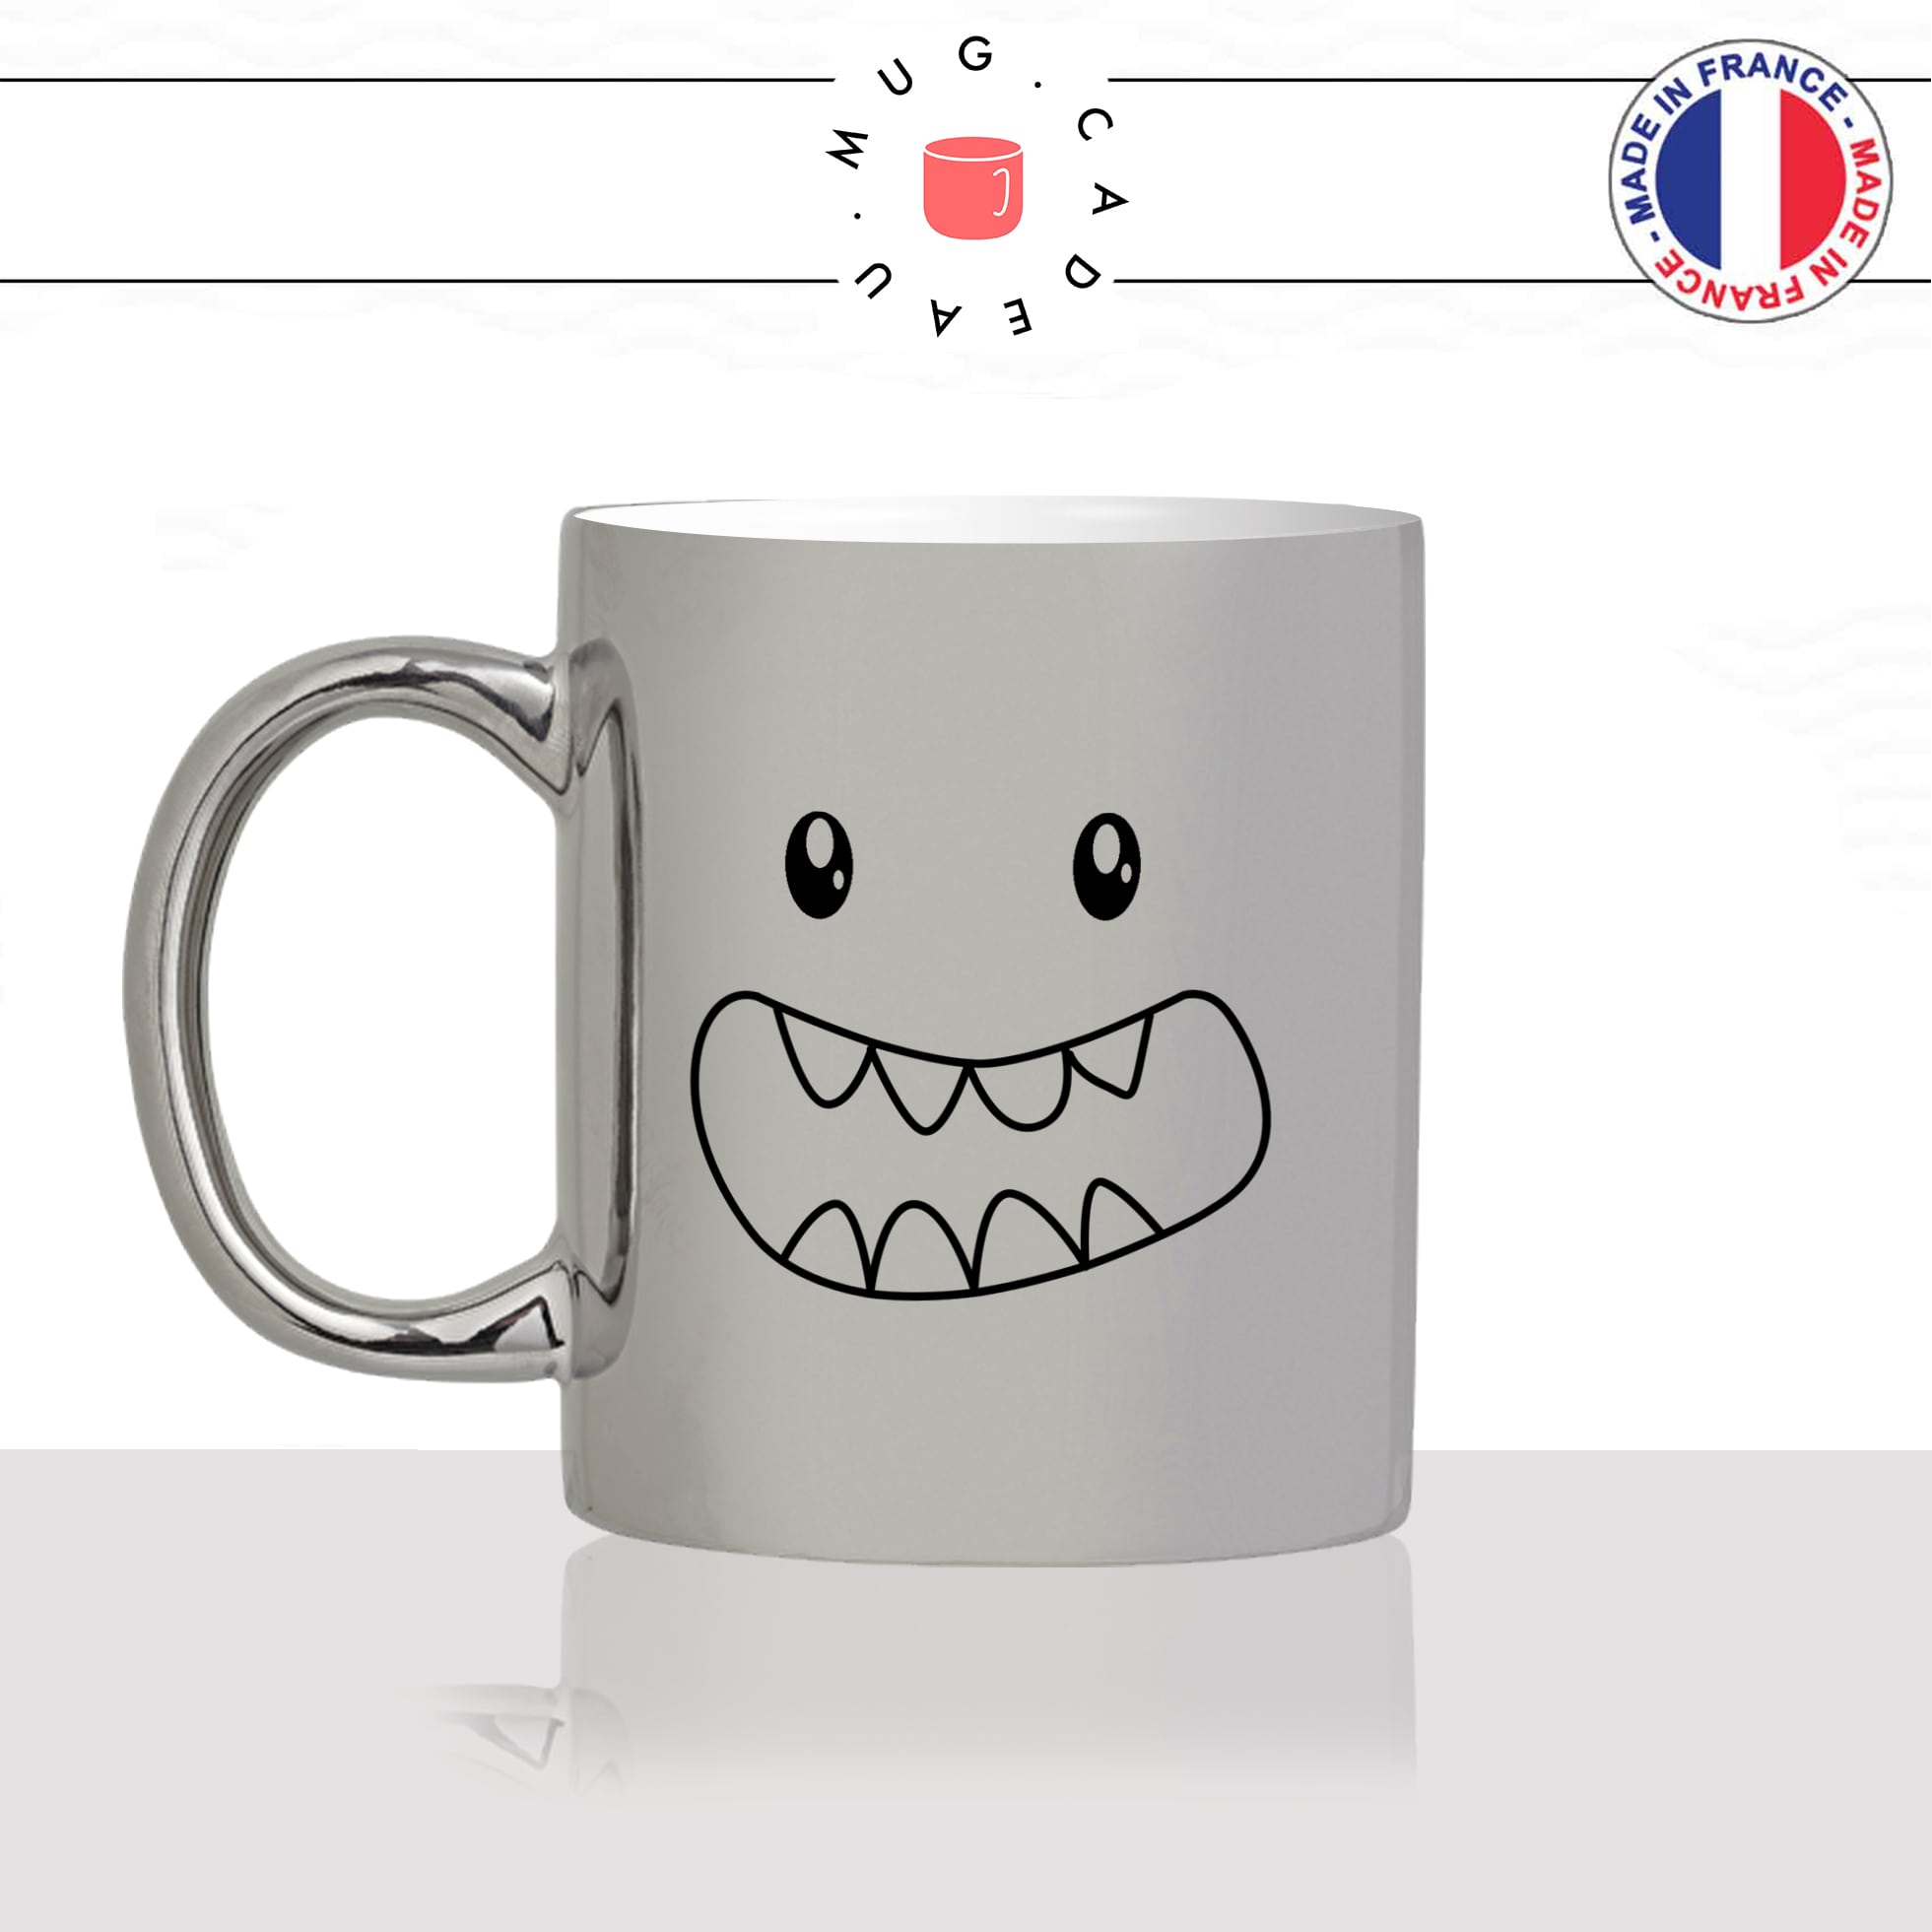 mug-tasse-silver-argenté-argent-monstre-gentil-dents-enfant-kawaii-dessin-mignon-animal-noir-fun-café-thé-idée-cadeau-original-personnalisé-min